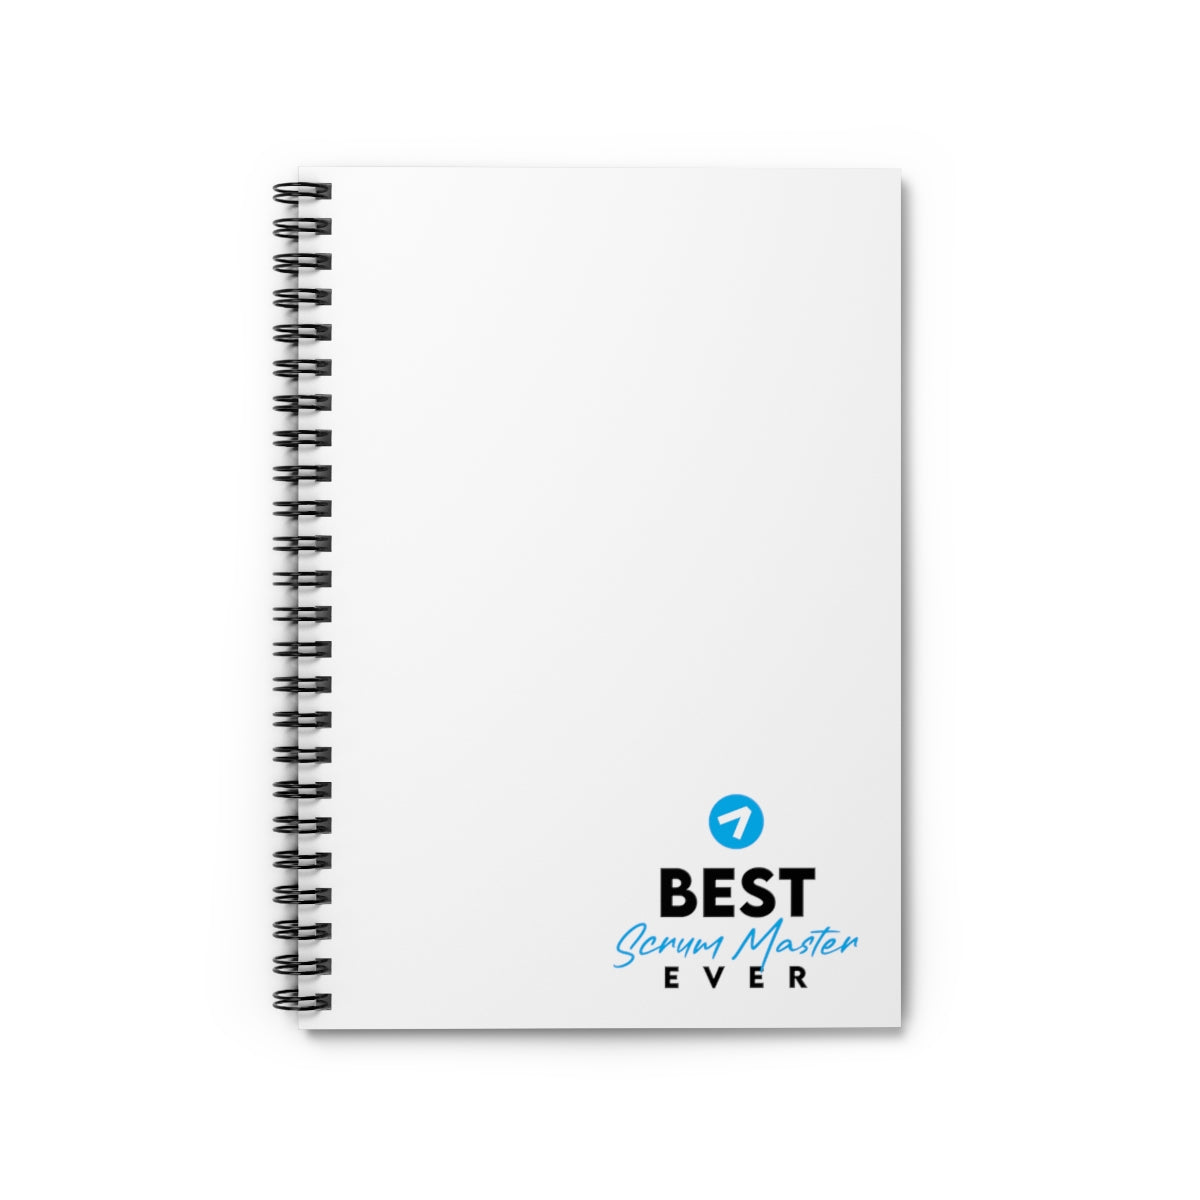 El mejor Scrum Master de todos los tiempos - Azul claro - Cuaderno de espiral - Línea reglada